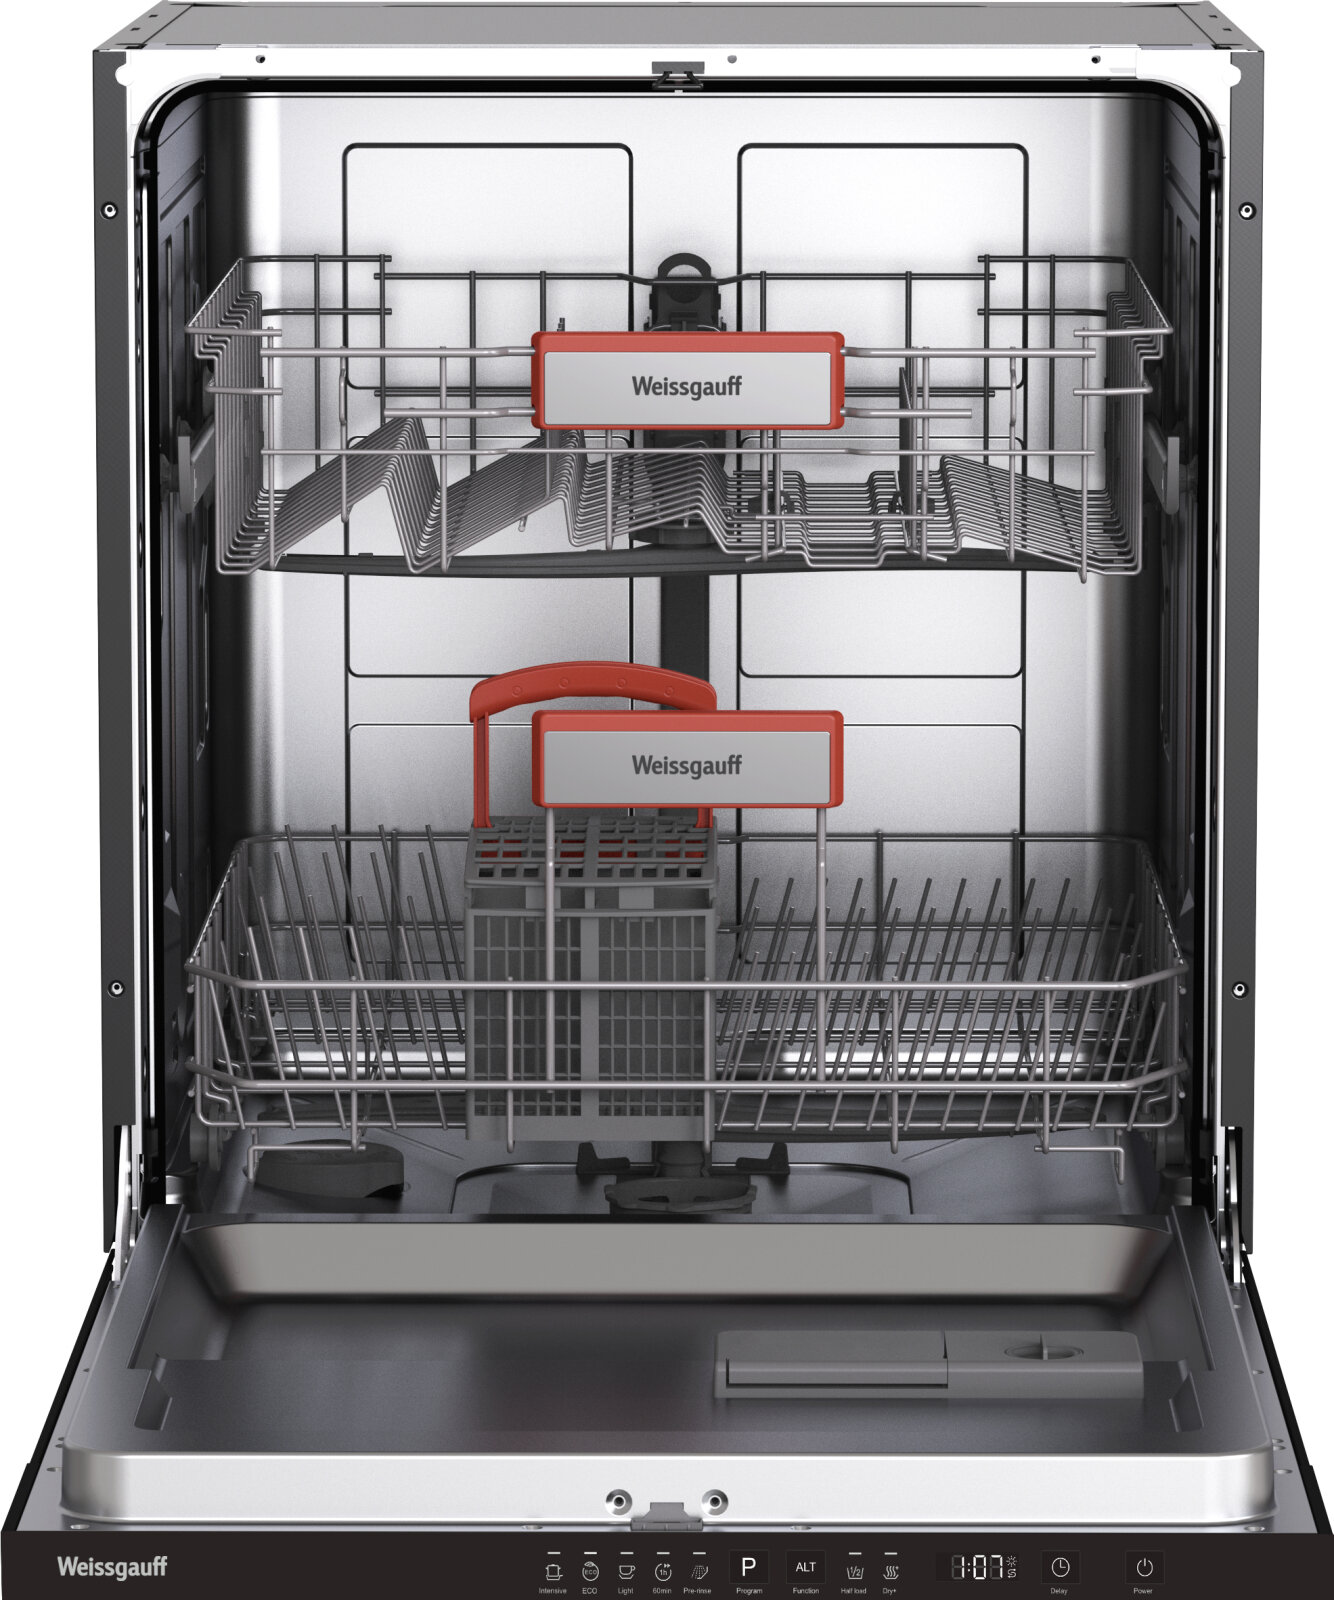 Встраиваемая посудомоечная машина с лучом на полу Weissgauff BDW 6025 D Infolight,3 года гарантии, 12 комплектов посуды, 5 программ, дополнительная сушка, половинная загрузка, дозагрузка посуды, индикаторы соли и ополаскивателя, защита от протечек